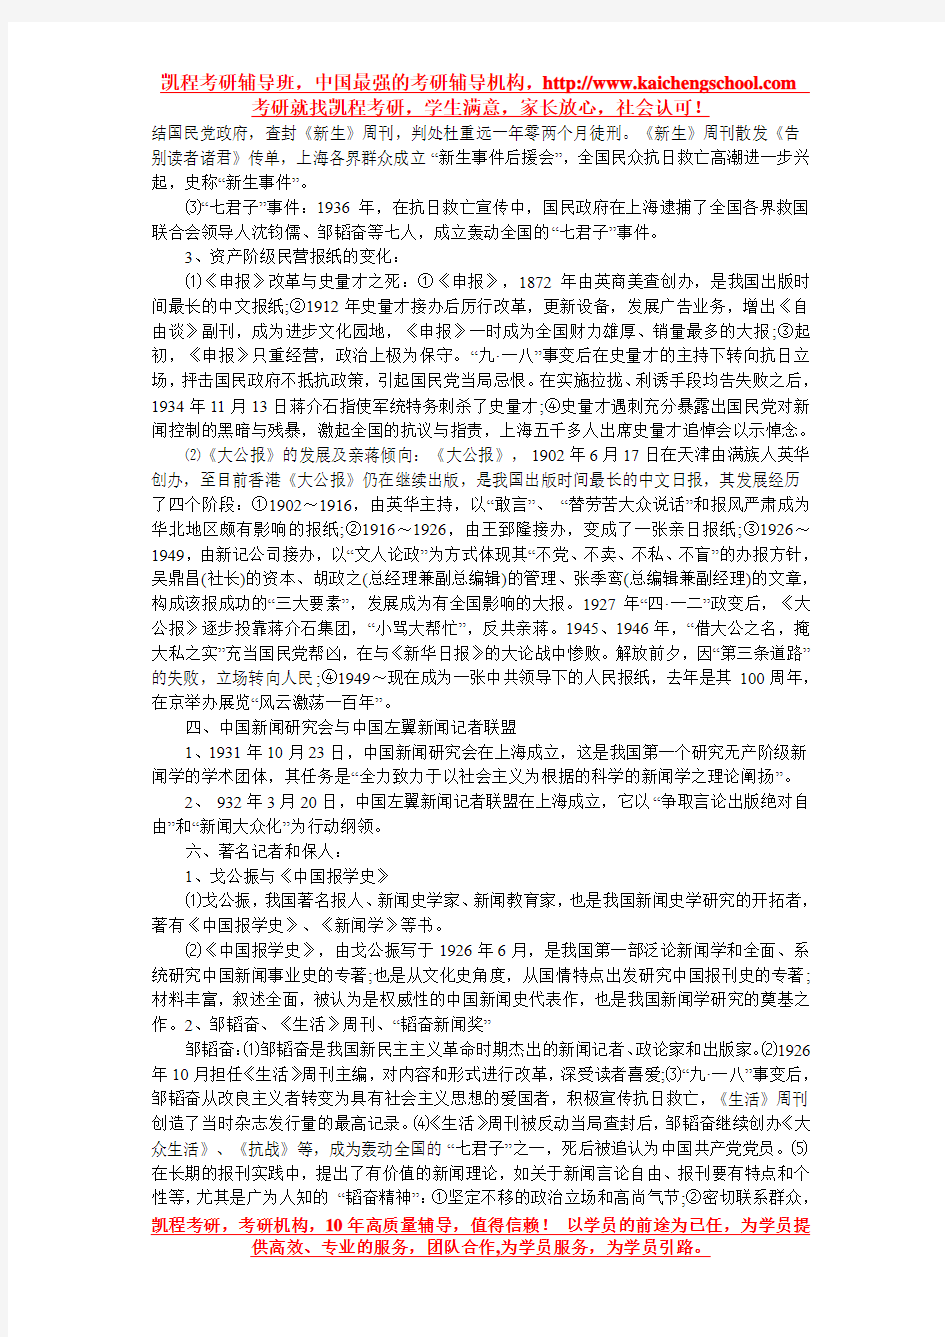 中国新闻事业史知识点梳理(第七章)